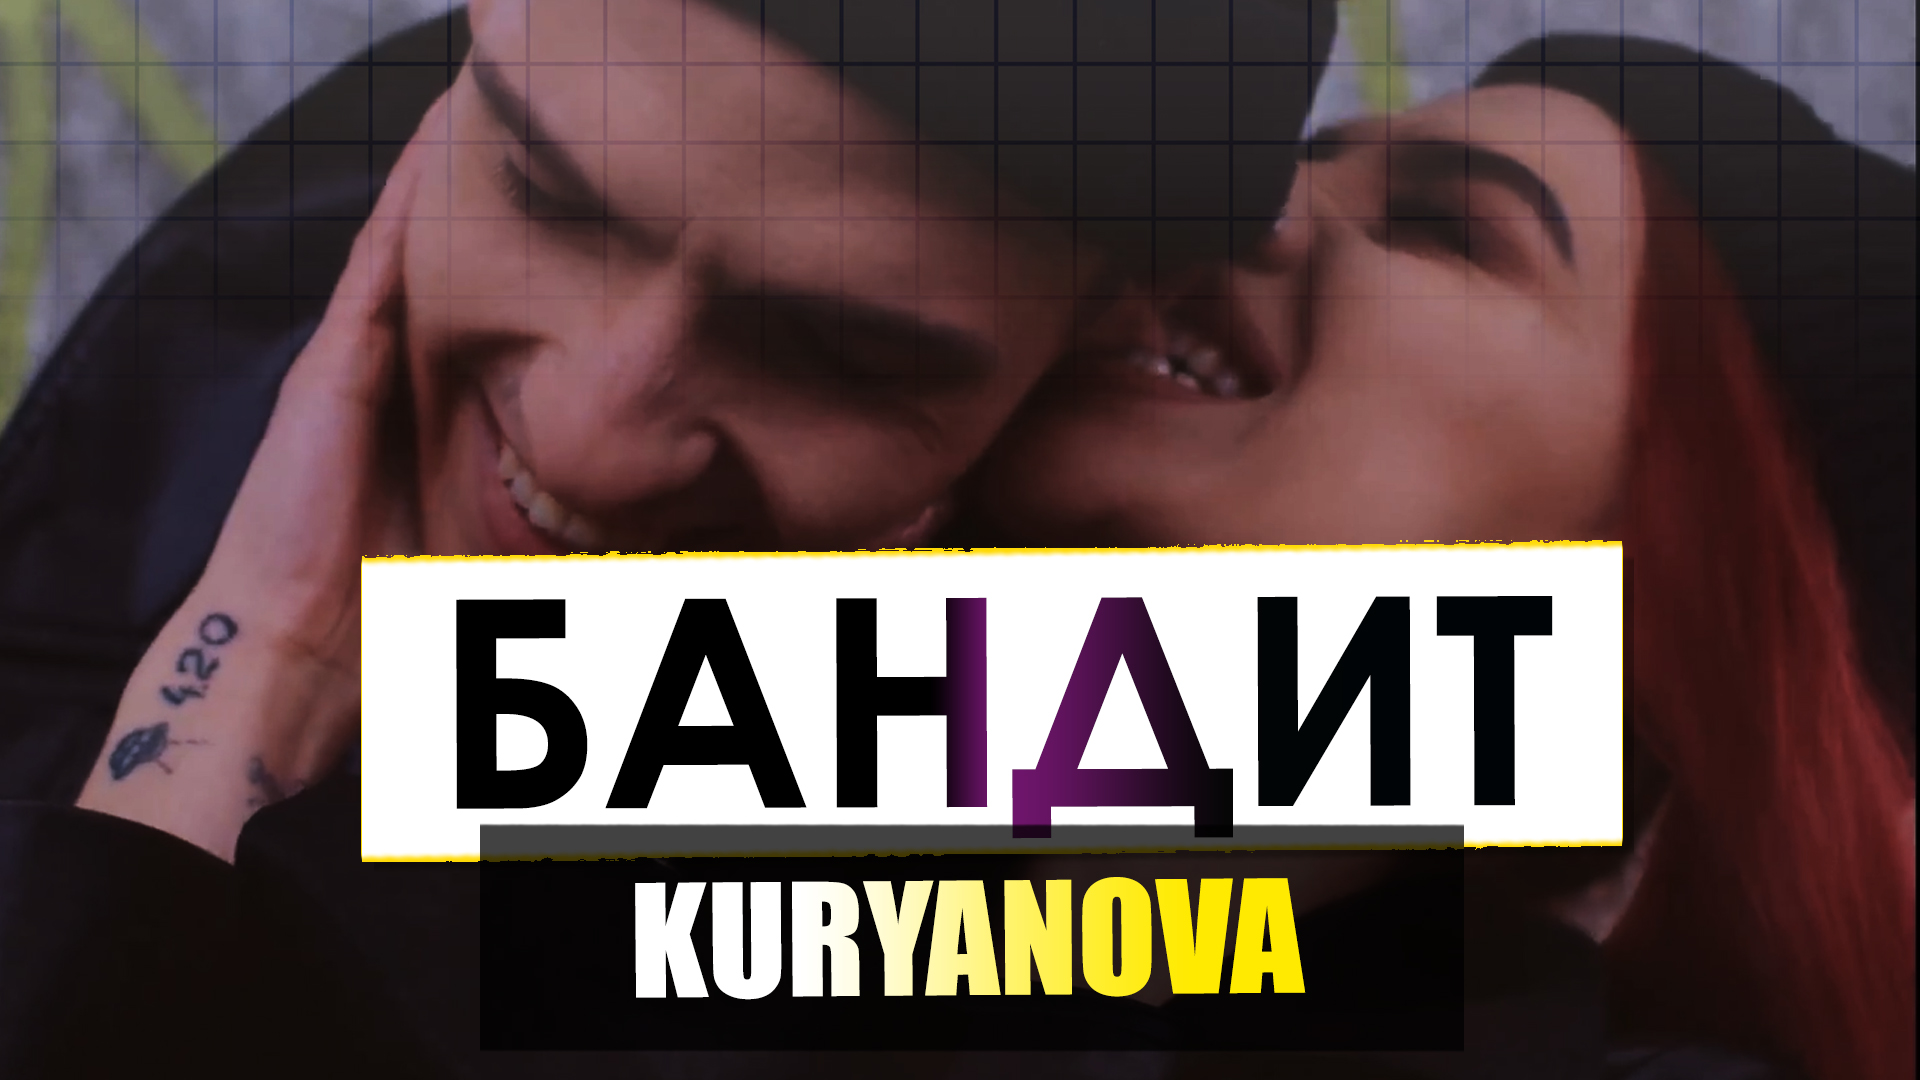 KURYANOVA - Бандит